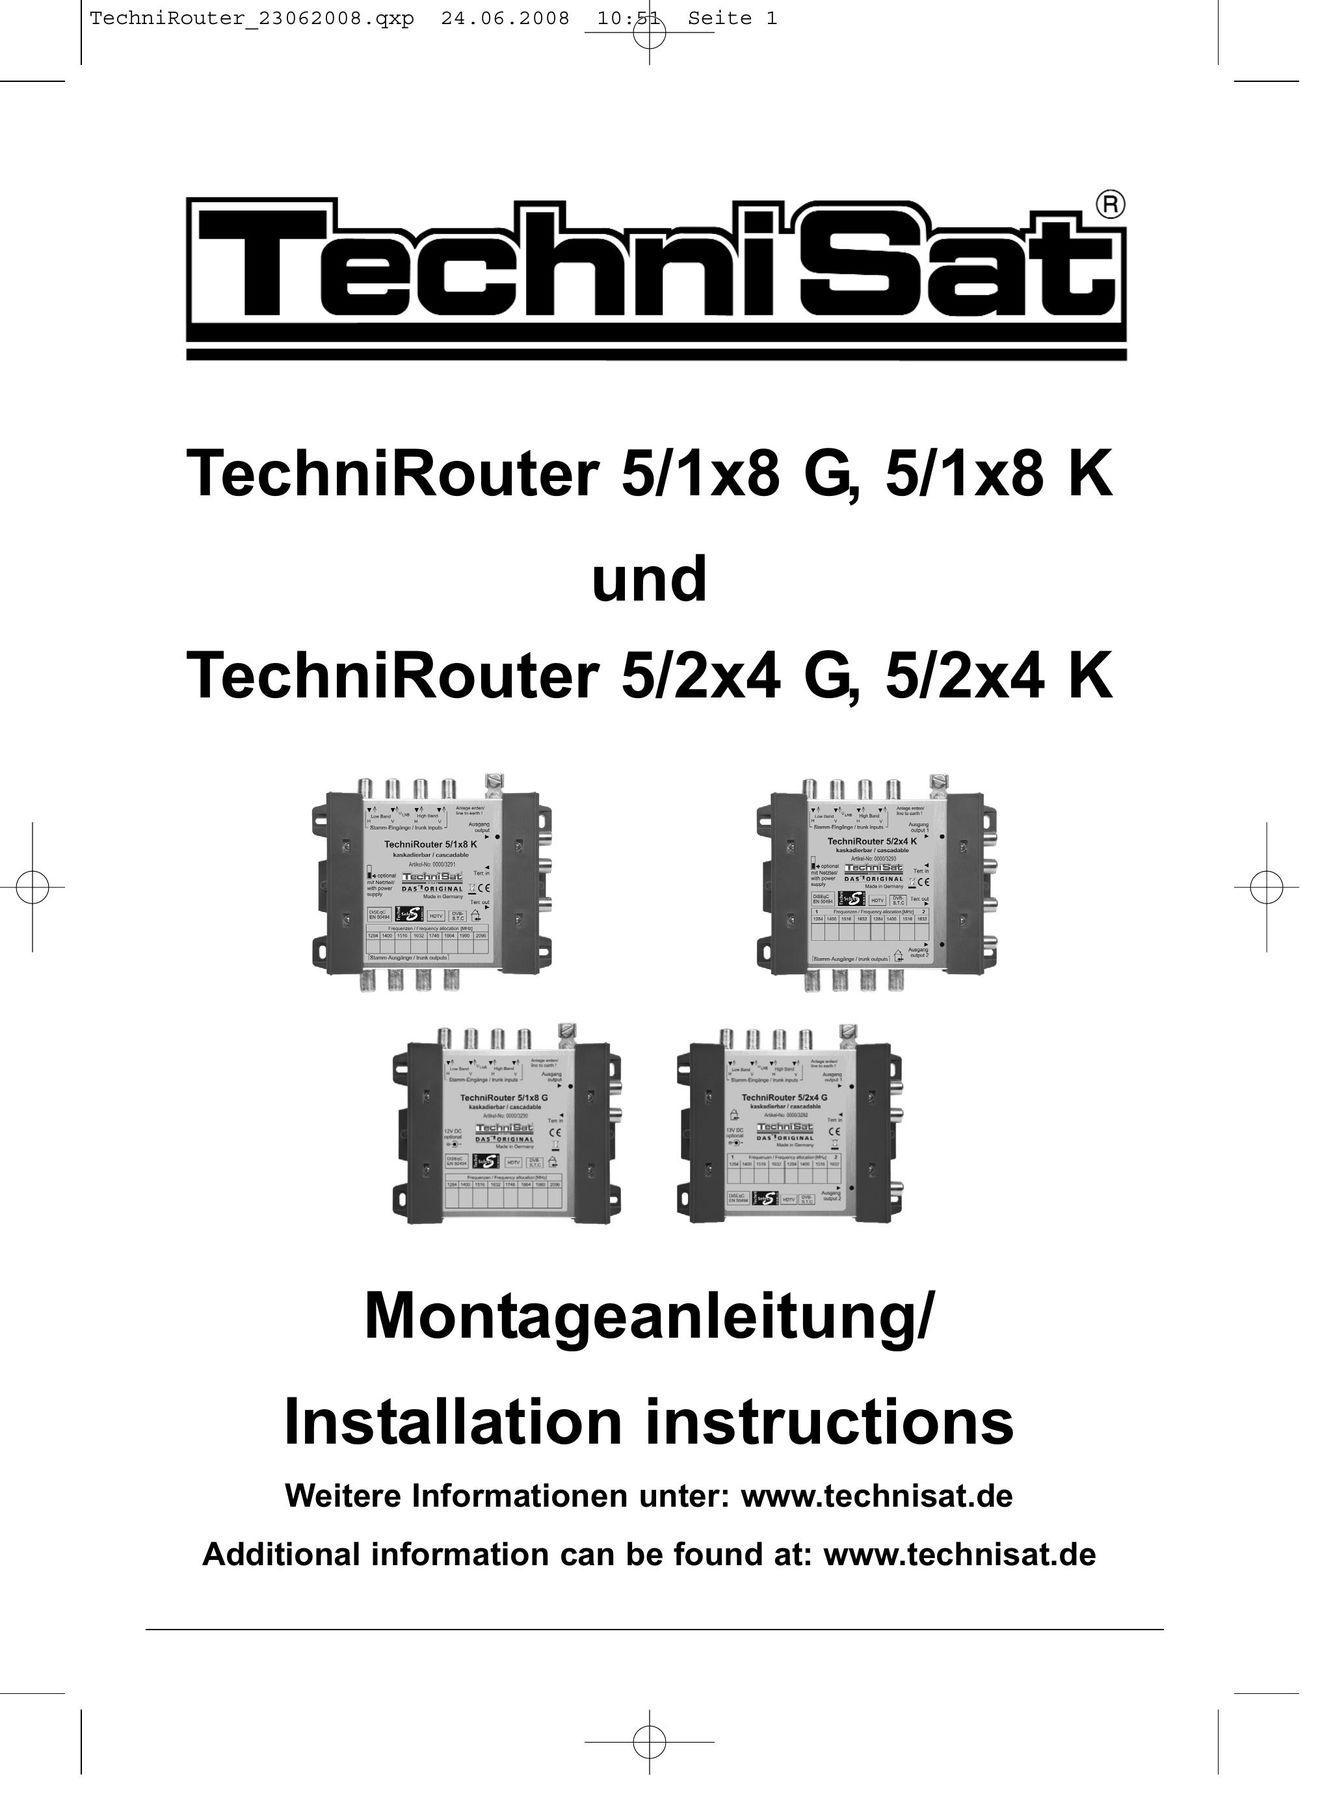 TechniSat 5/1x8 K Network Router User Manual